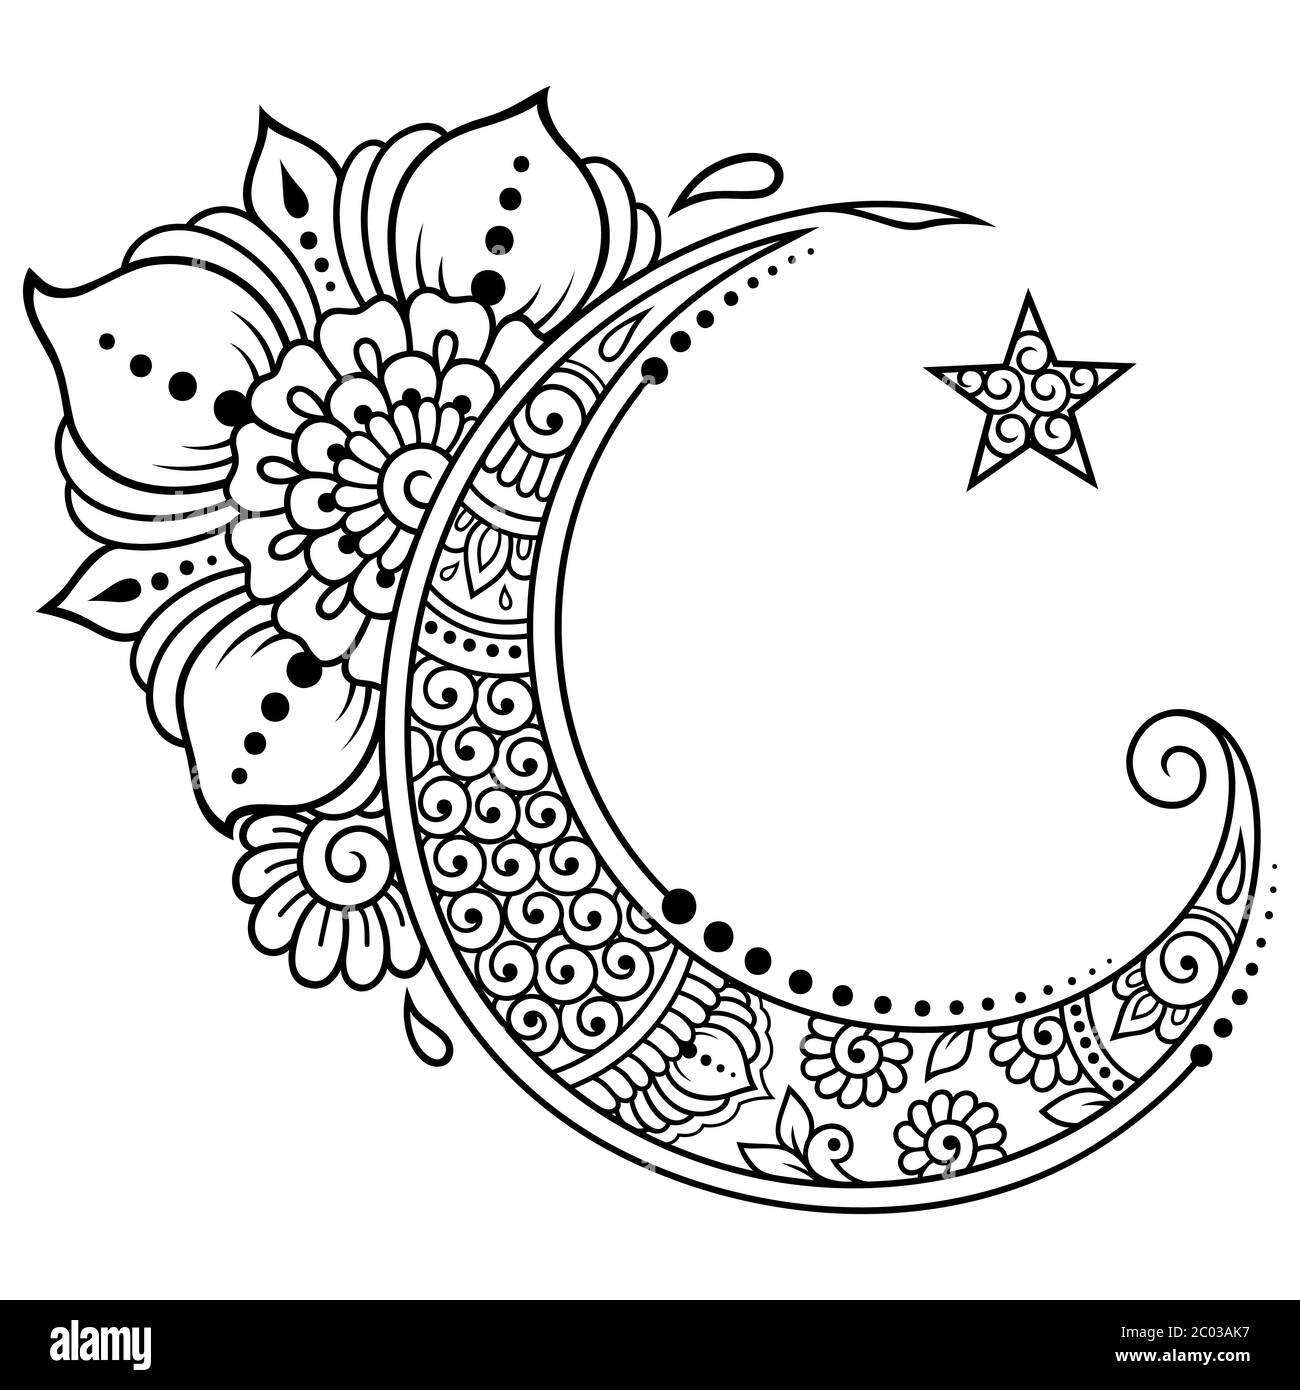 Simbolo religioso islamico della Stella e della Mezzaluna con fiore in stile mehndi. Segno decorativo per la produzione e tatuaggi. Significante musulmano orientale. Illustrazione Vettoriale